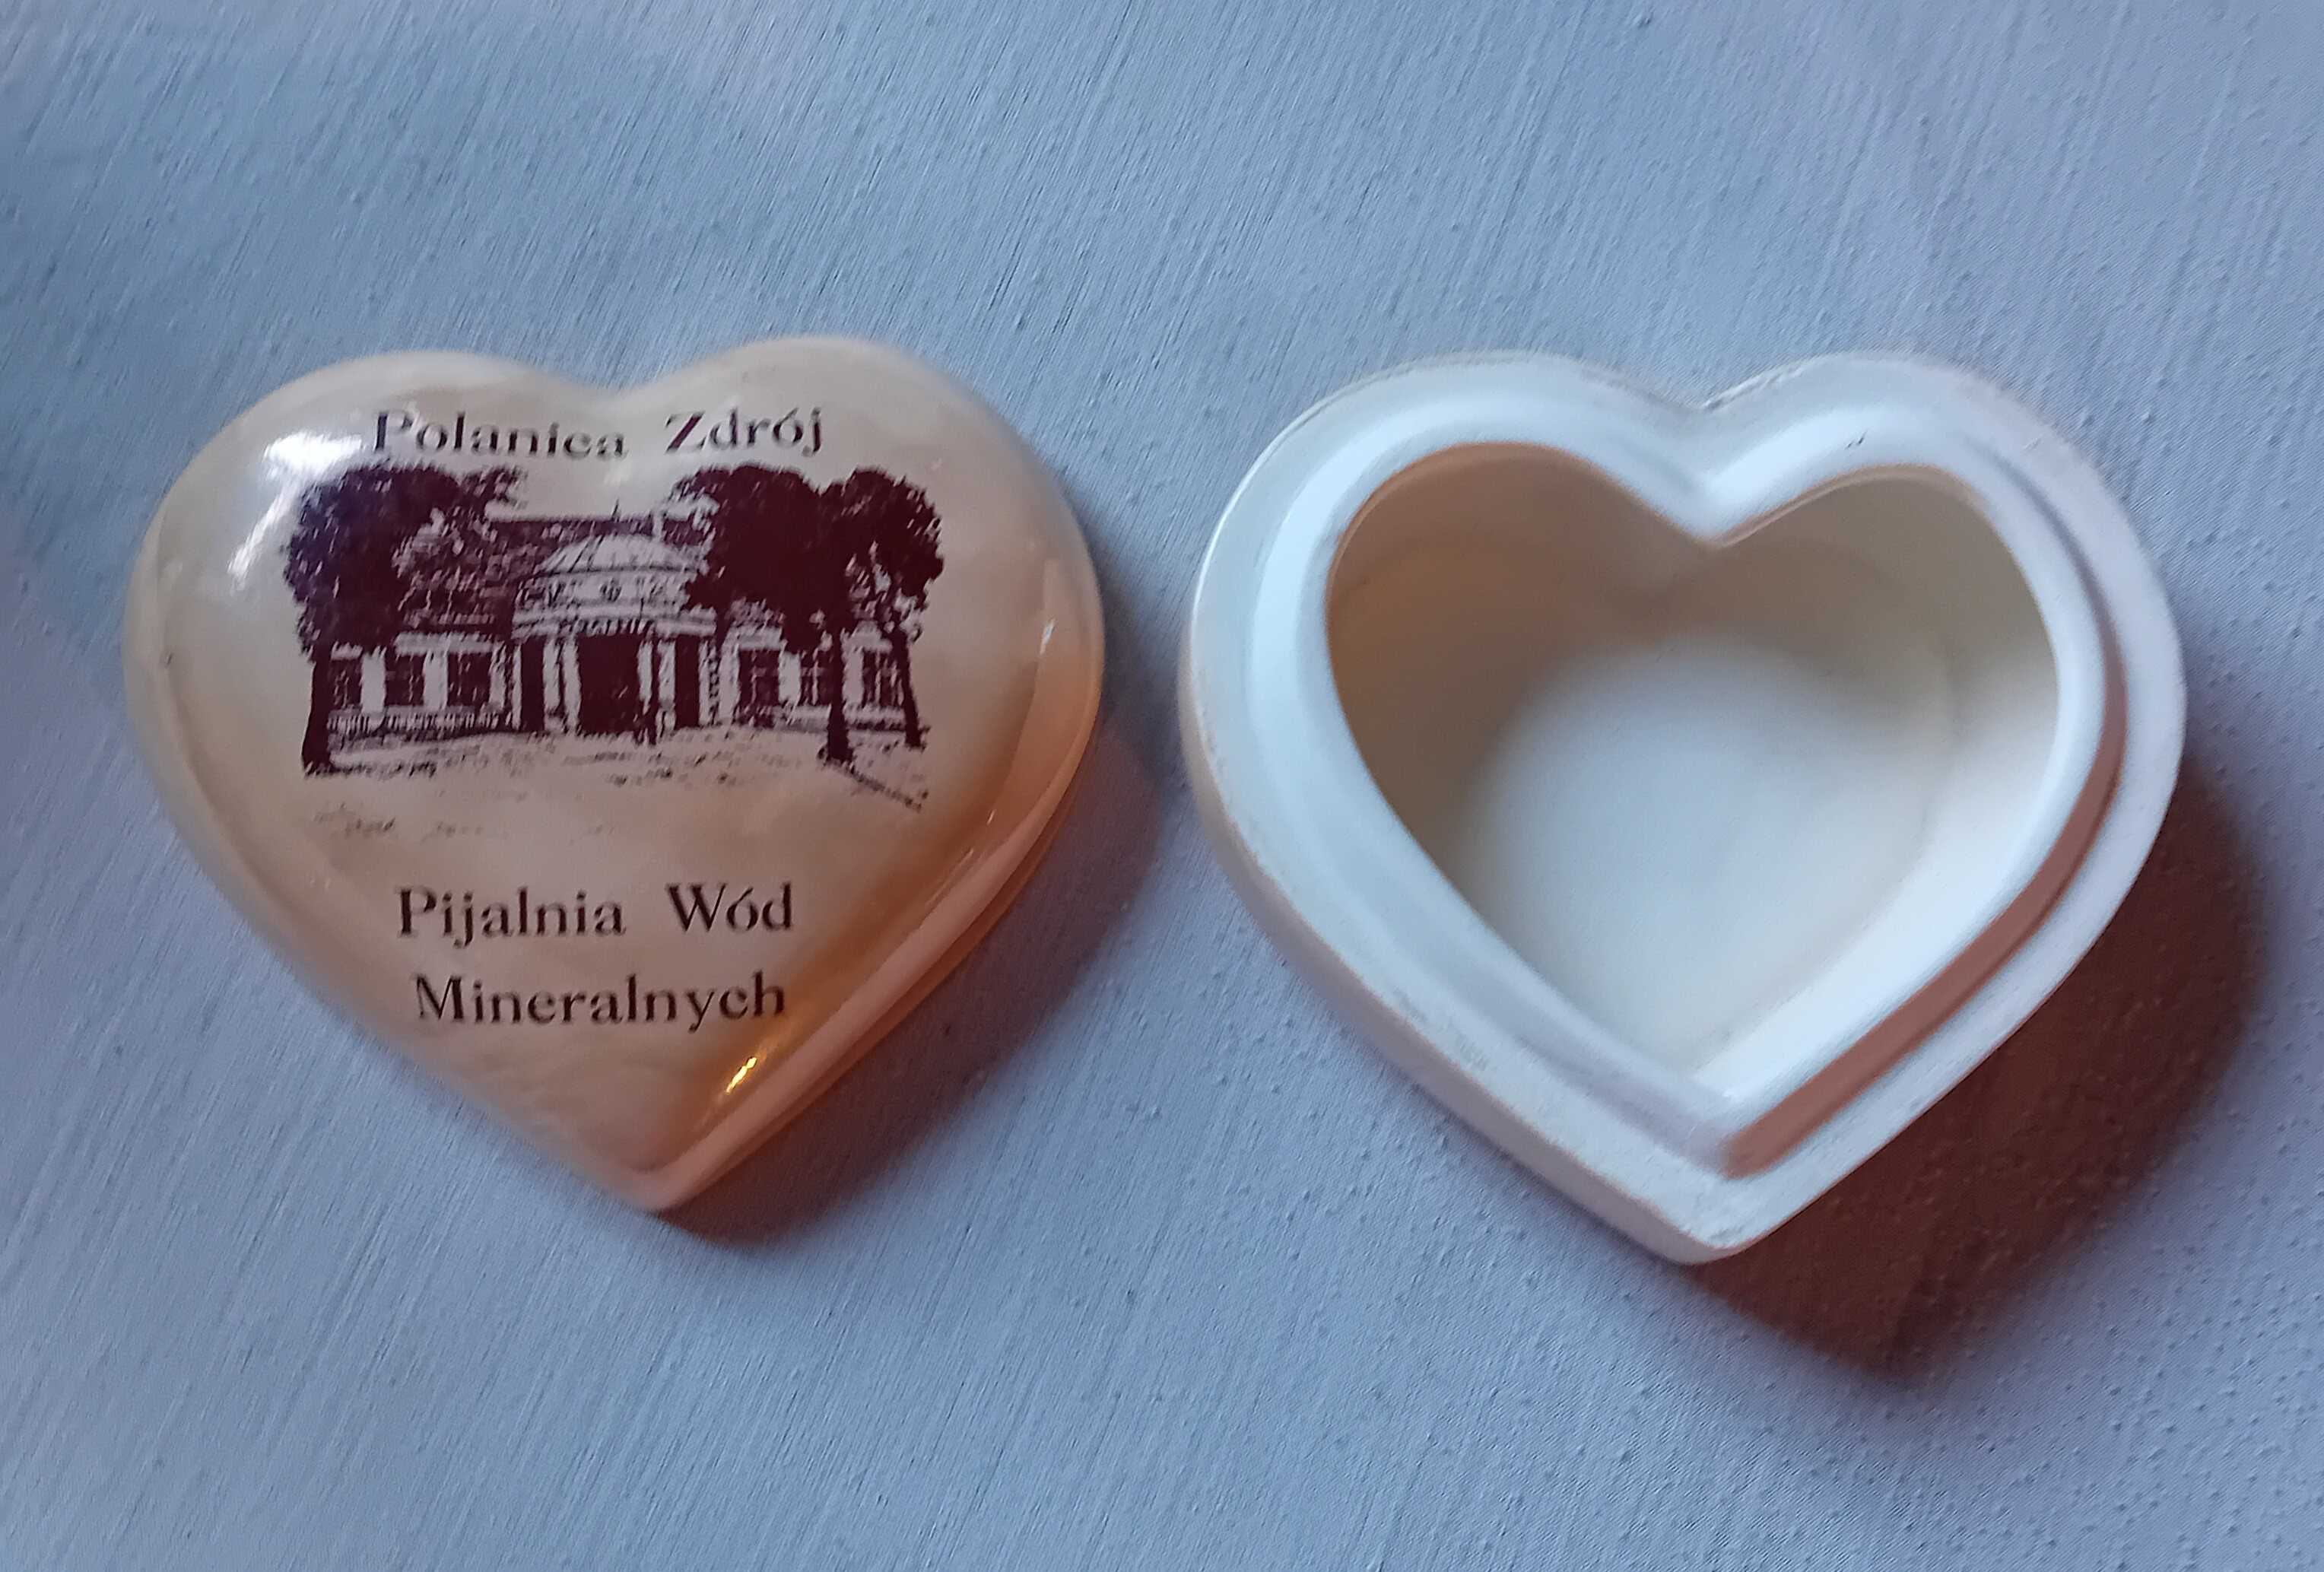 Porcelanowe puzderko w formie serca - Polanica Zdrój.